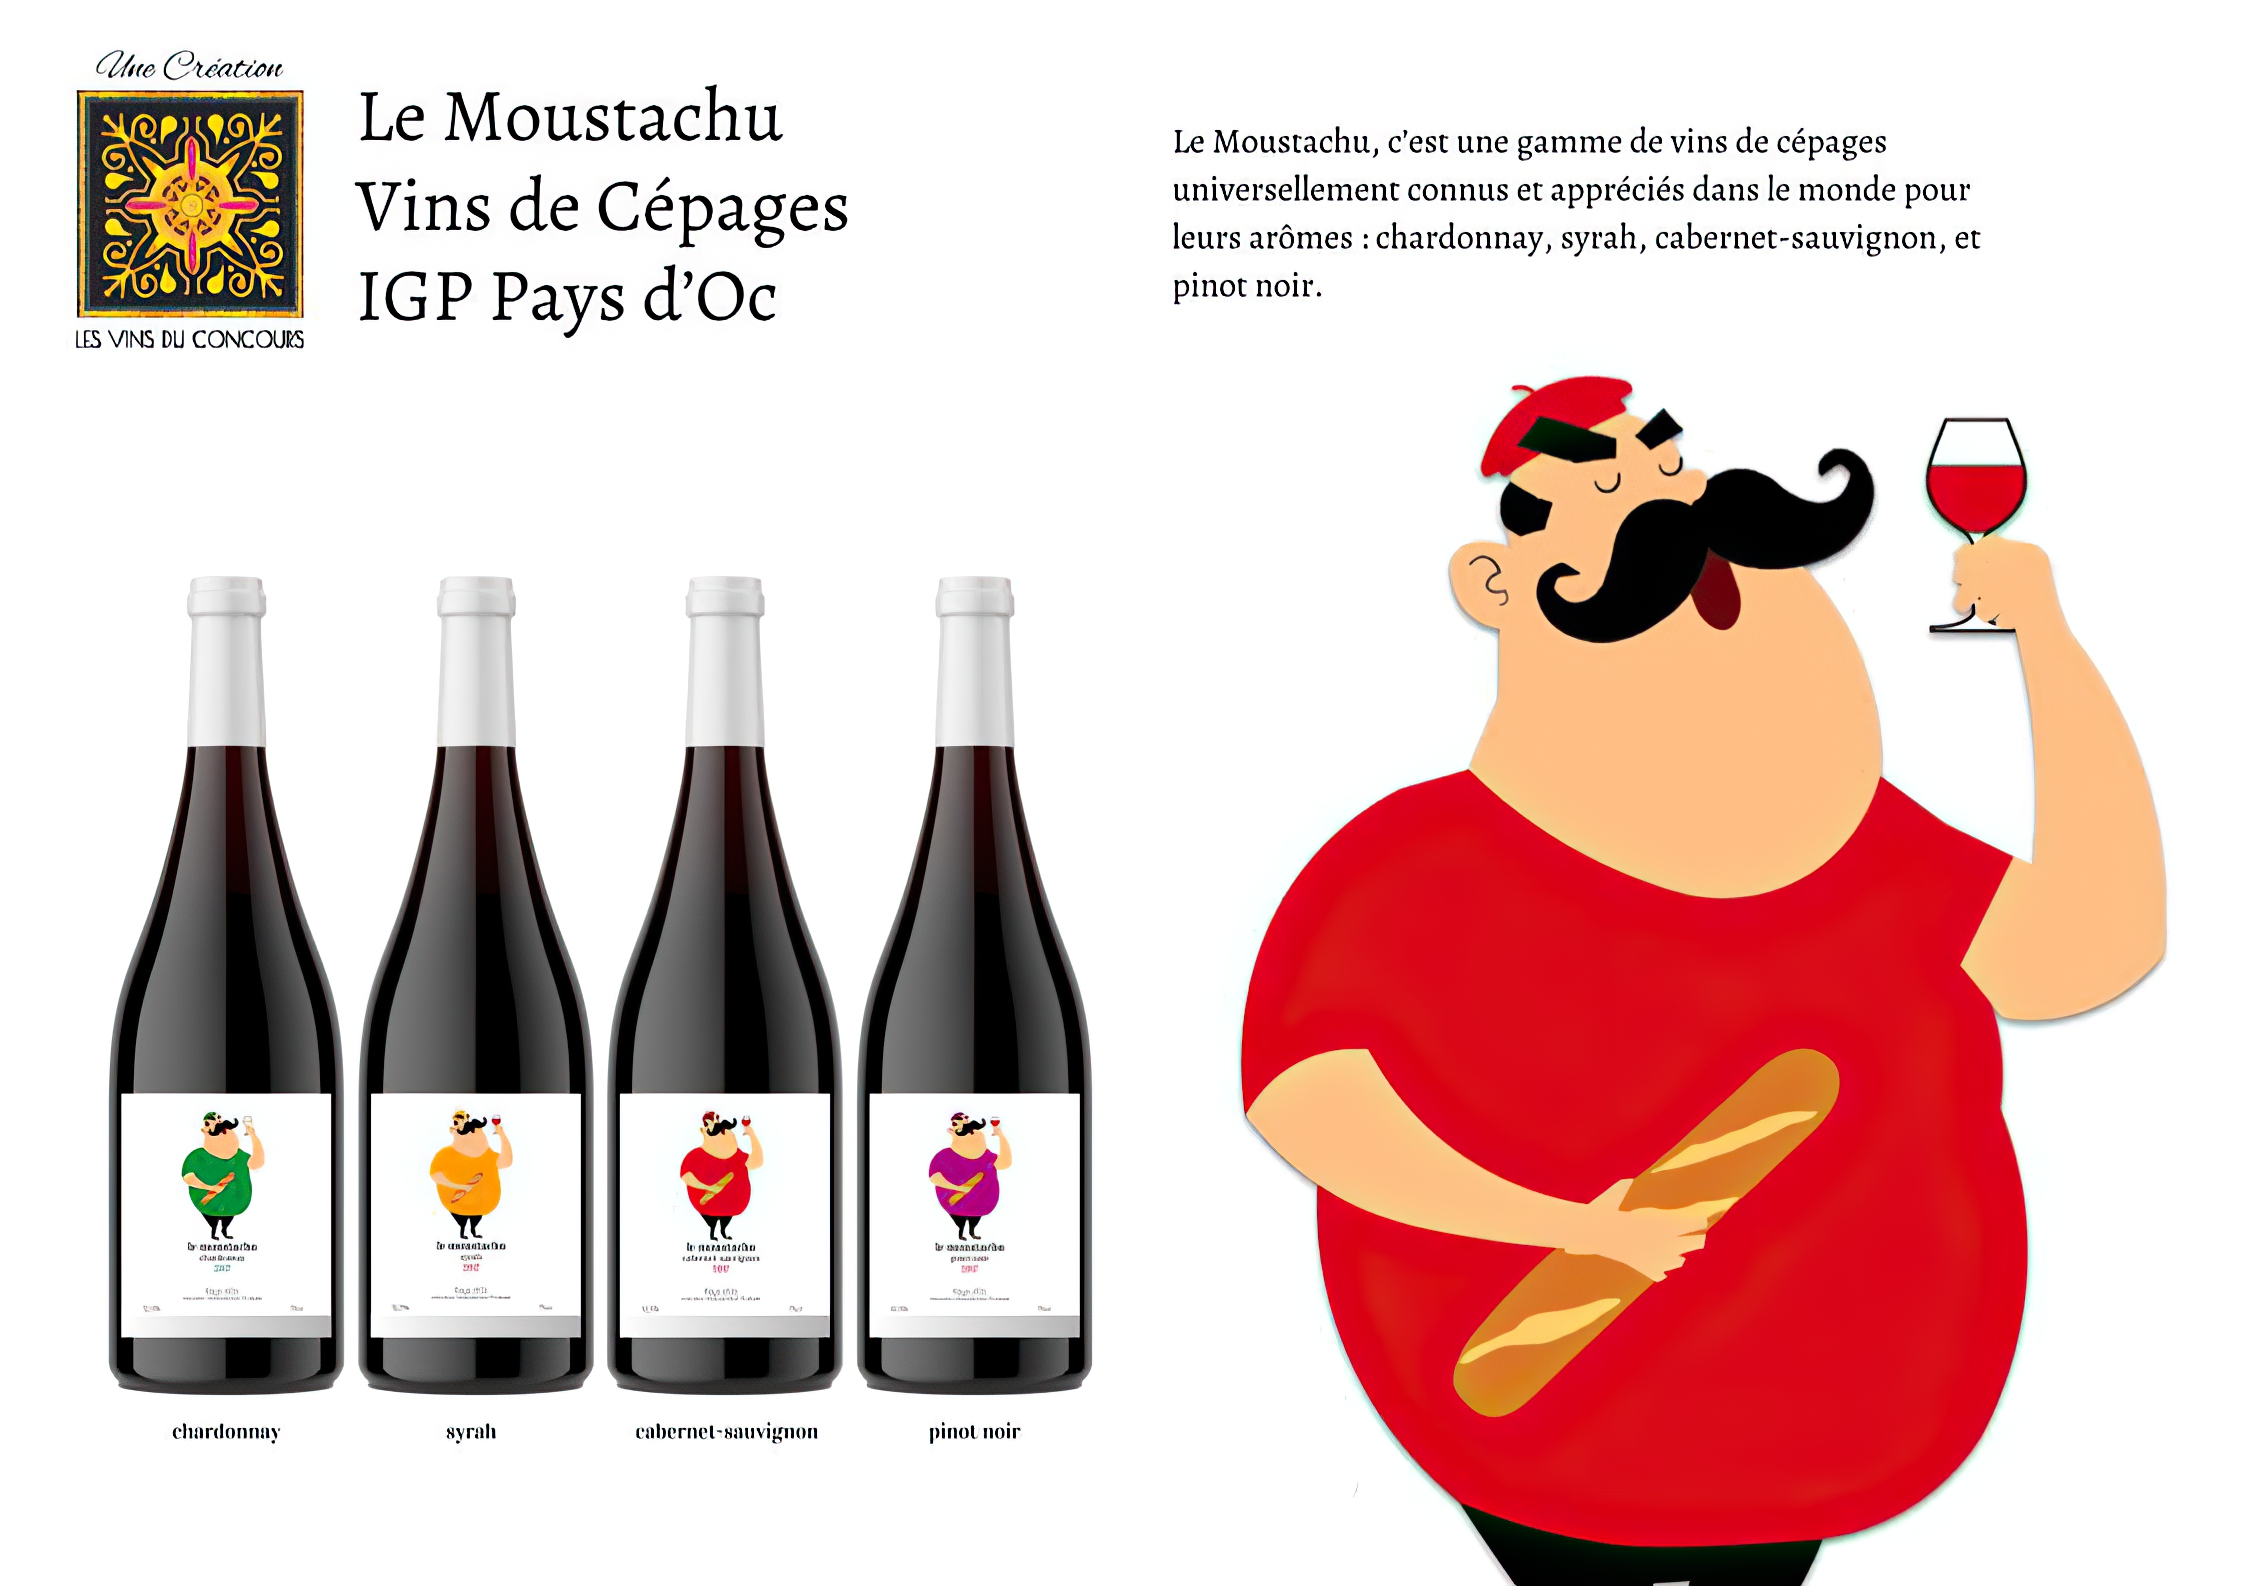 Marketing Gamme de Vins Le Moustachu